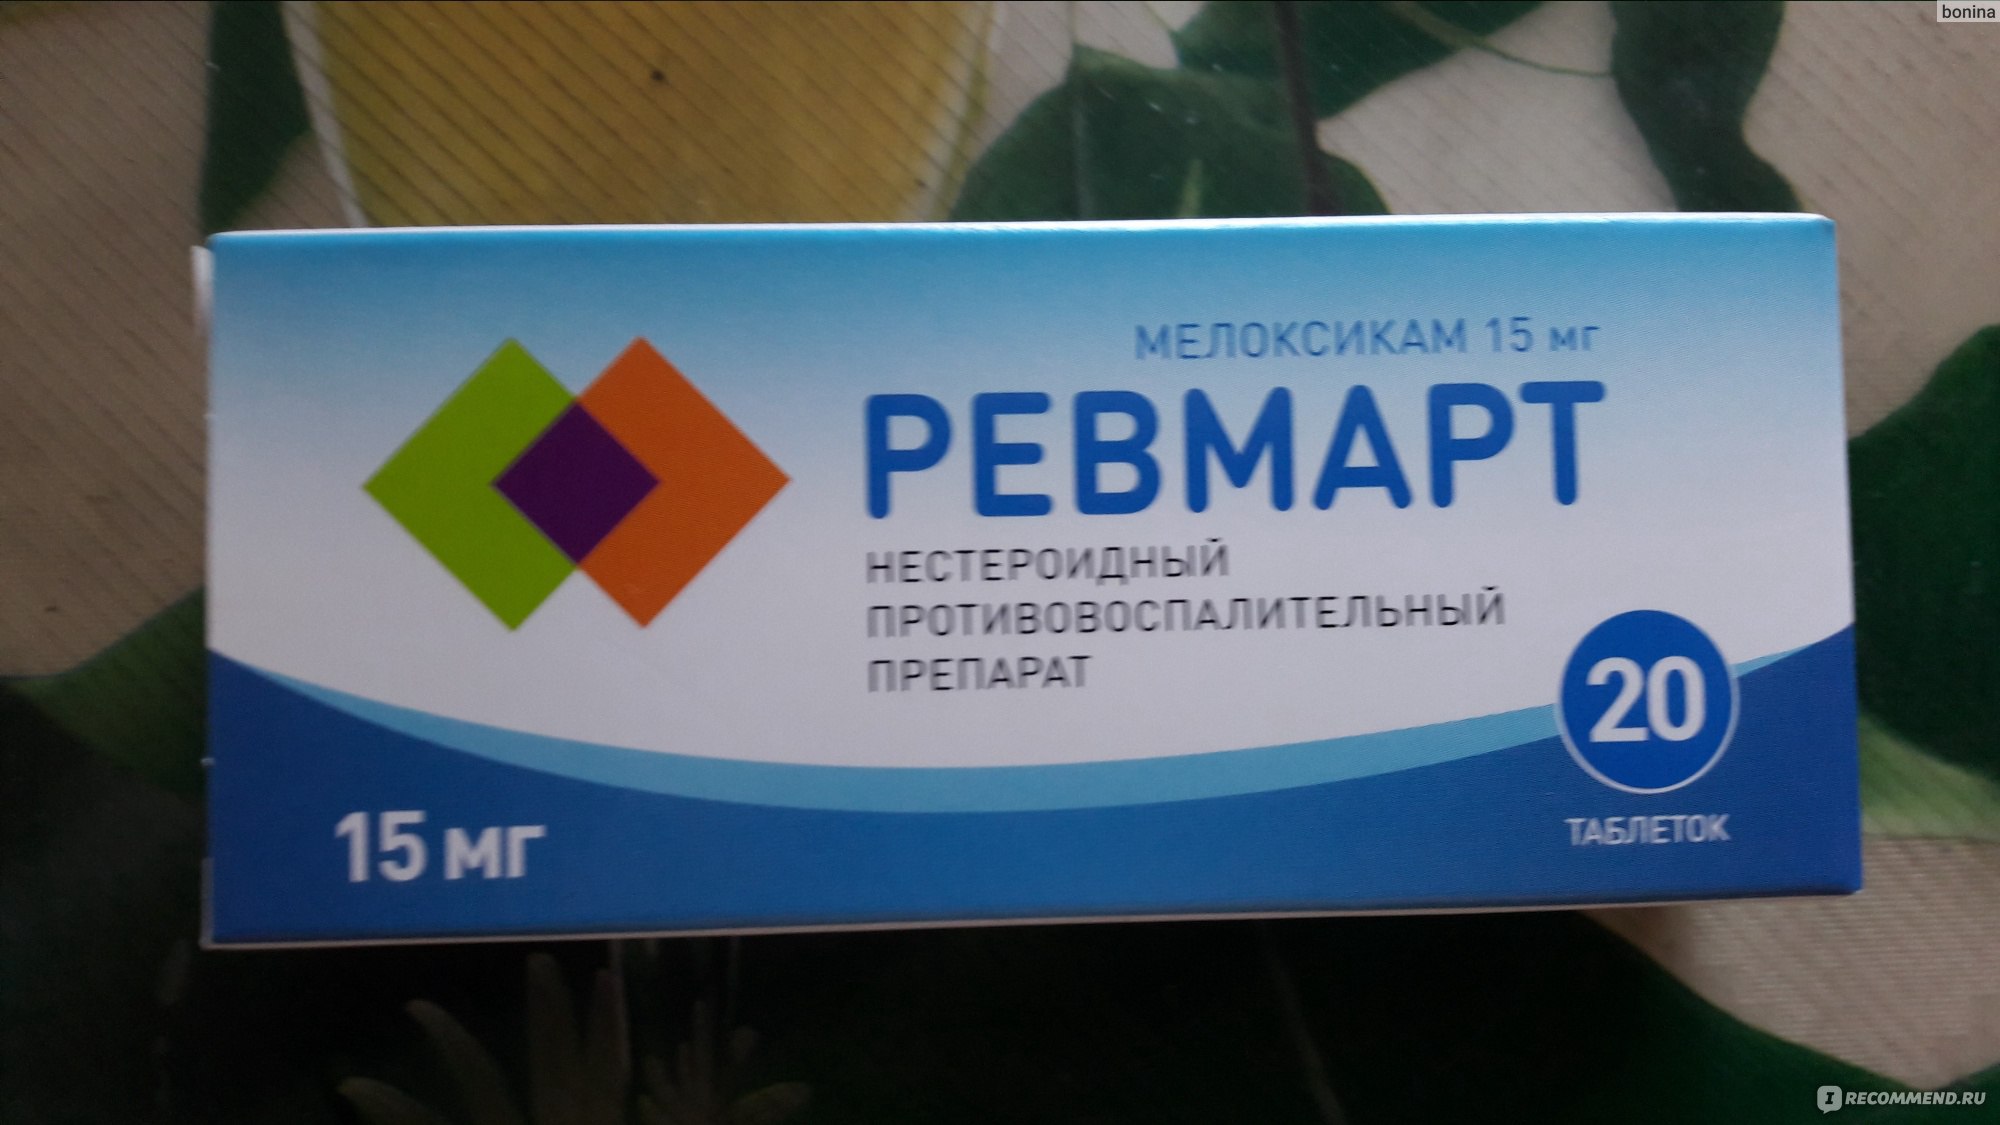 Нестероидный противовоспалительный препарат Алси фарма Ревмарт в .